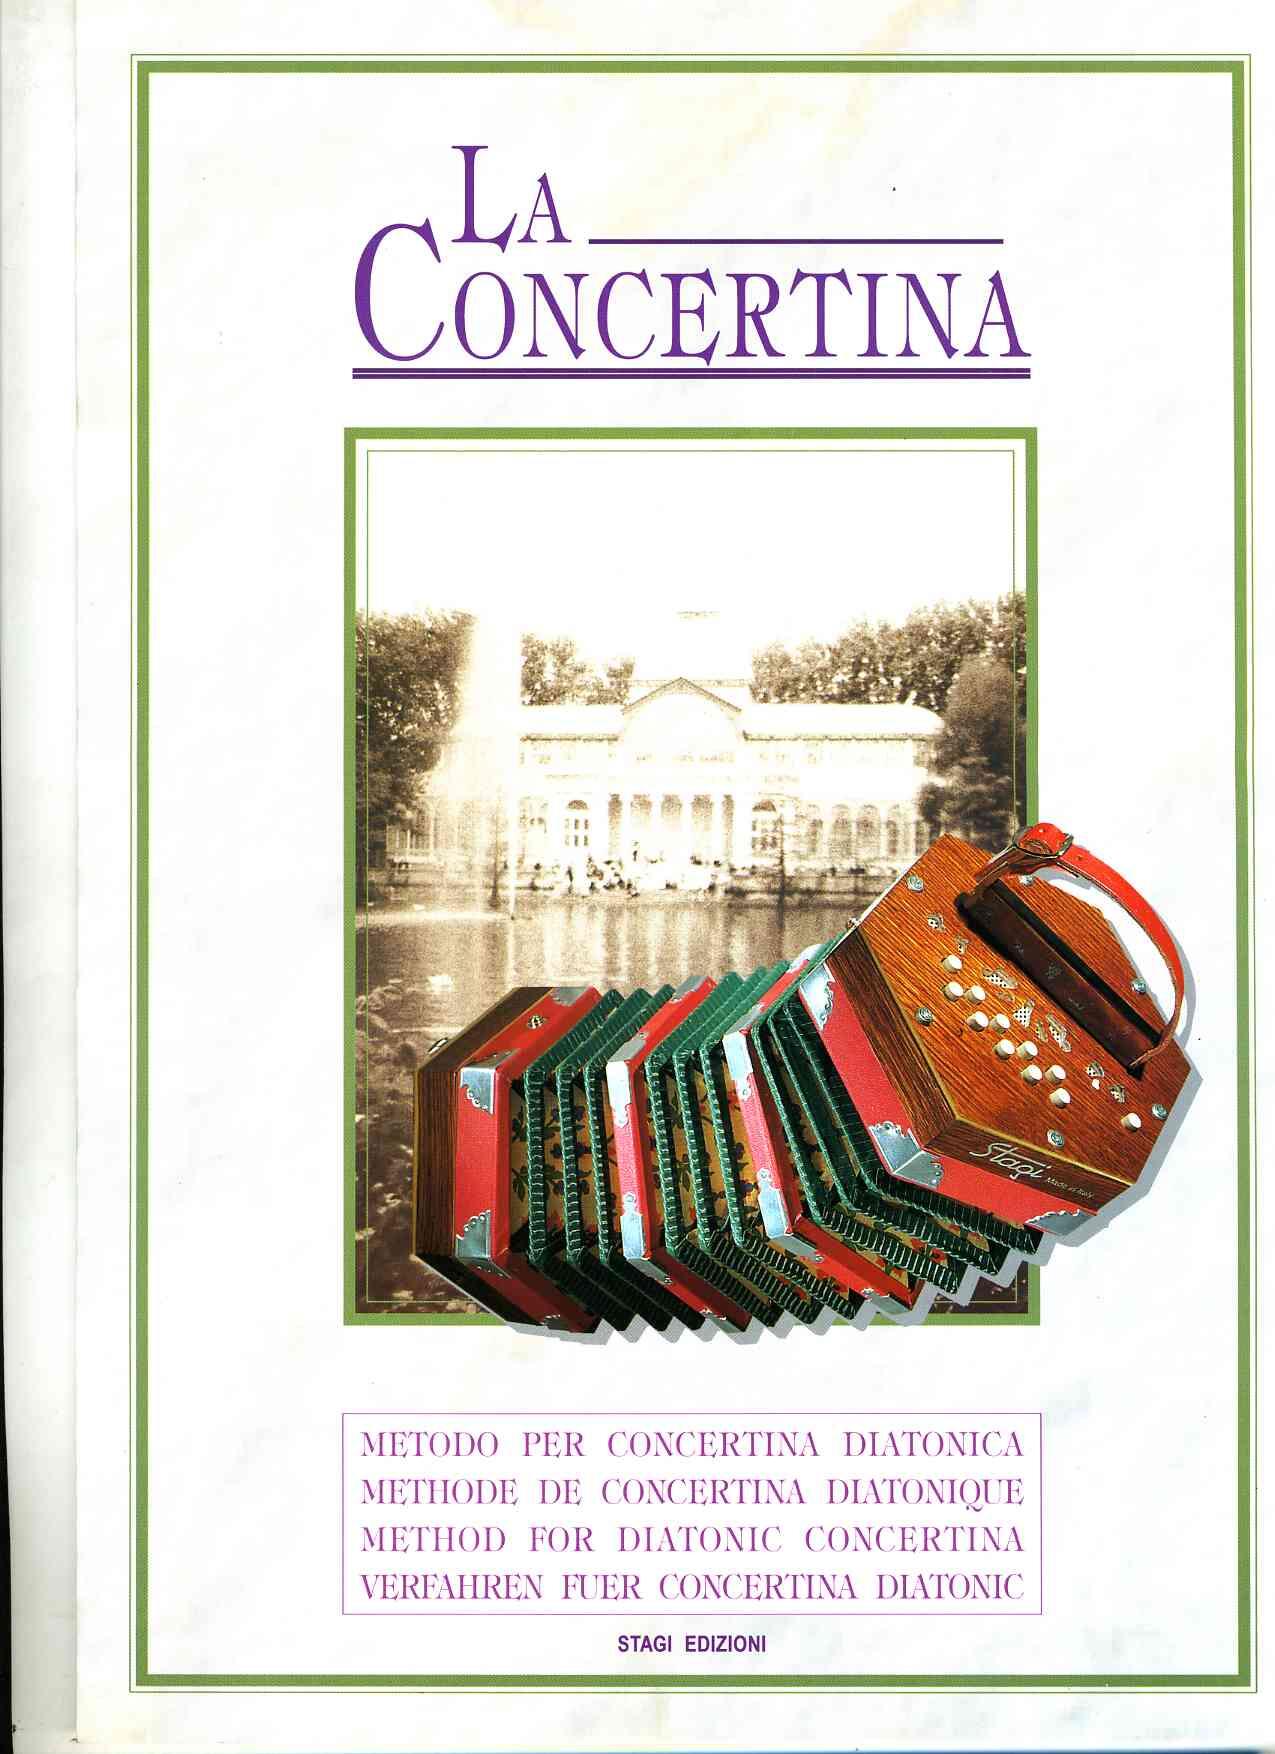 La concertina (texte allemand) : photo 1